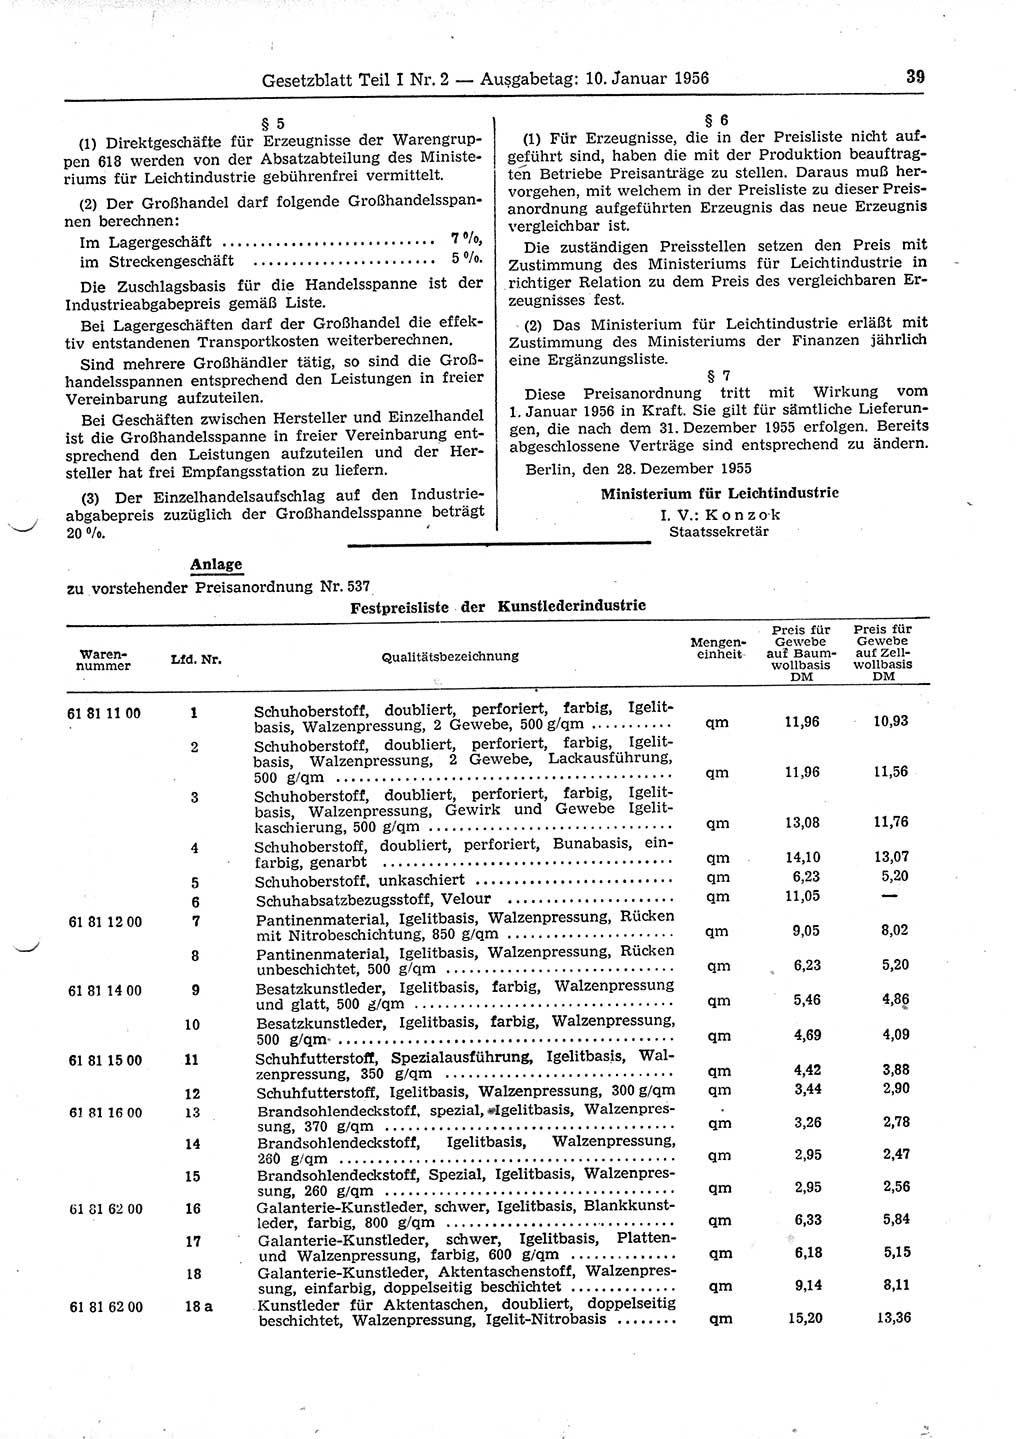 Gesetzblatt (GBl.) der Deutschen Demokratischen Republik (DDR) Teil Ⅰ 1956, Seite 39 (GBl. DDR Ⅰ 1956, S. 39)